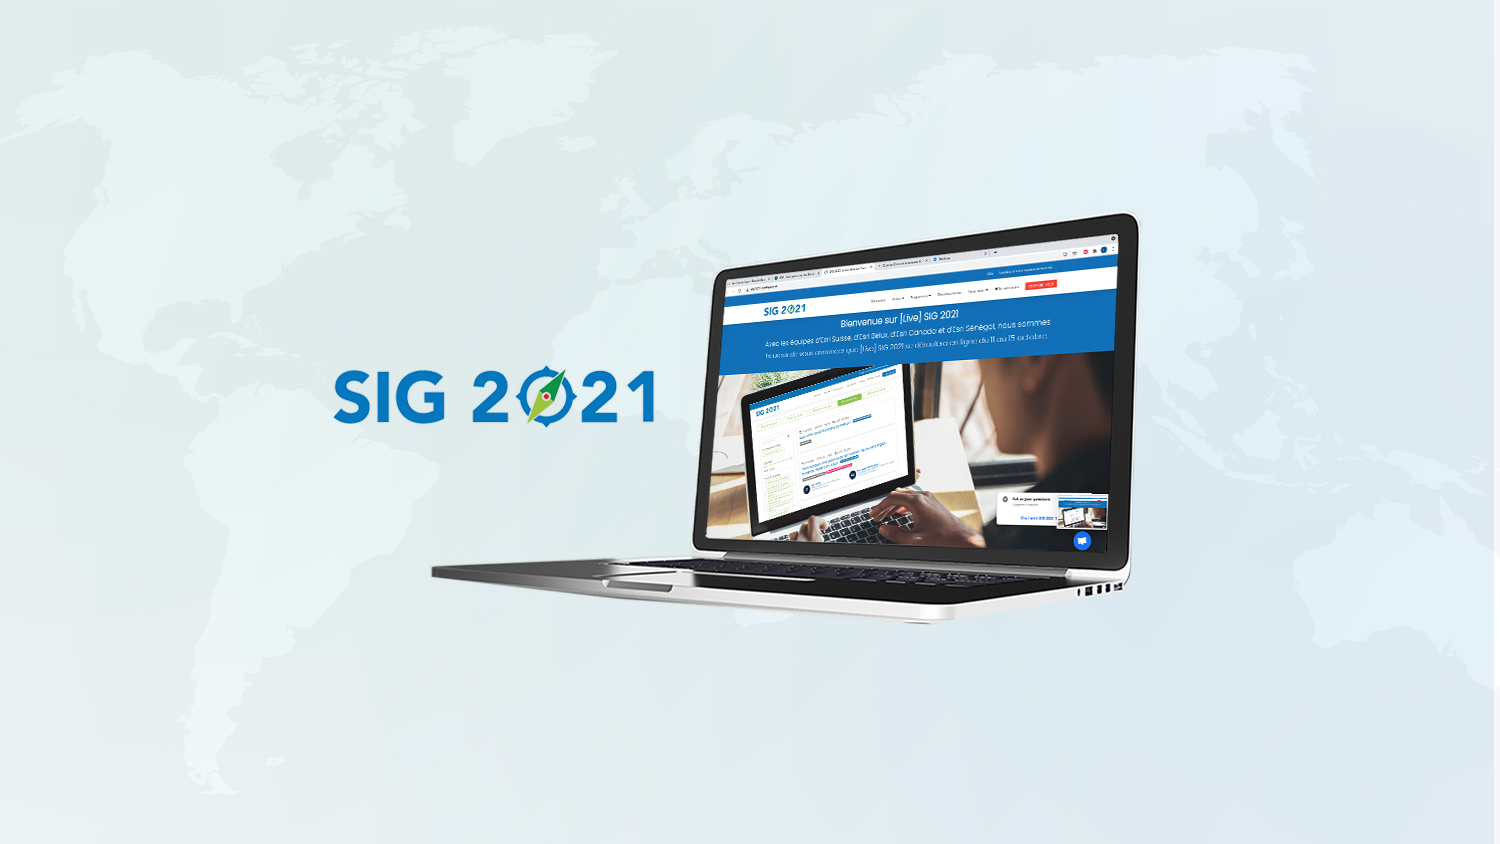 2021 Esri France SIG virtual event